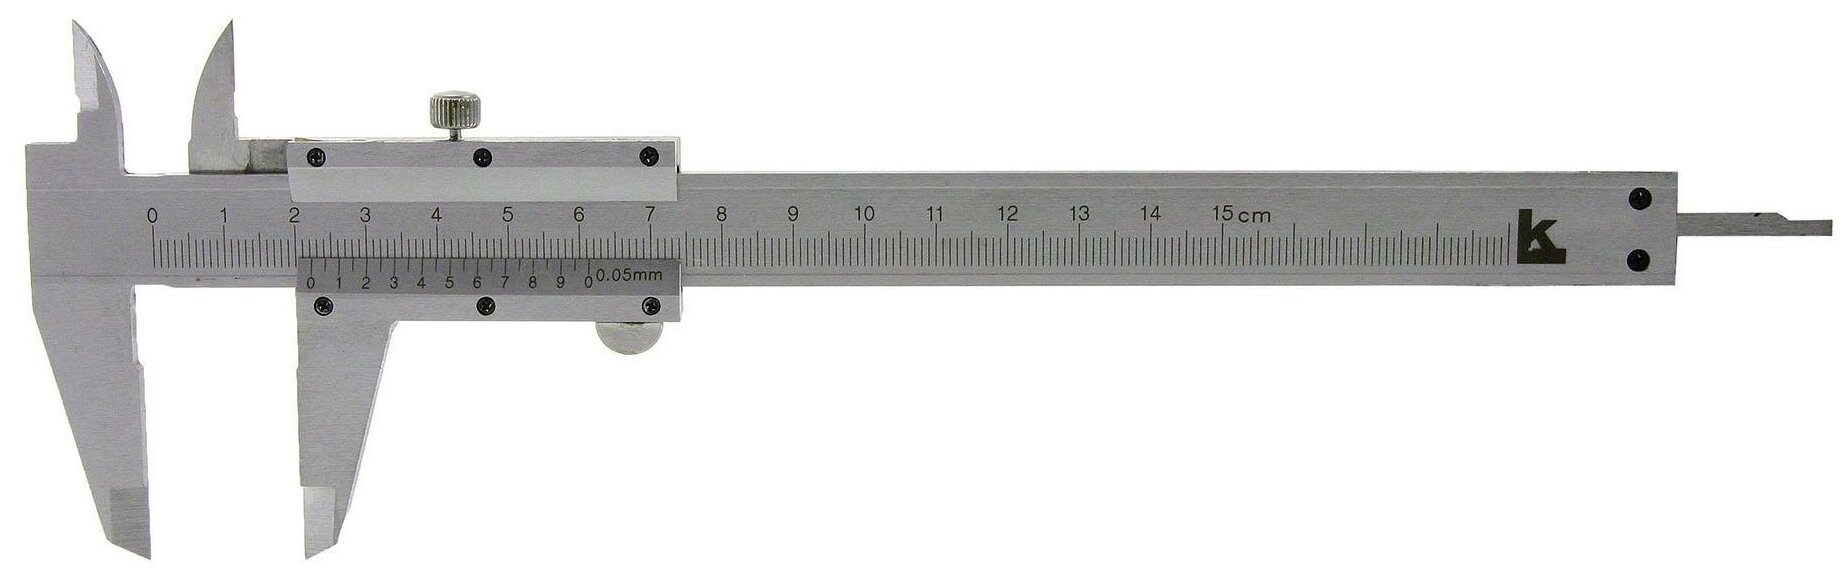 Нониусный штангенциркуль КАЛИБРОН 104529 150 мм 0.1 мм